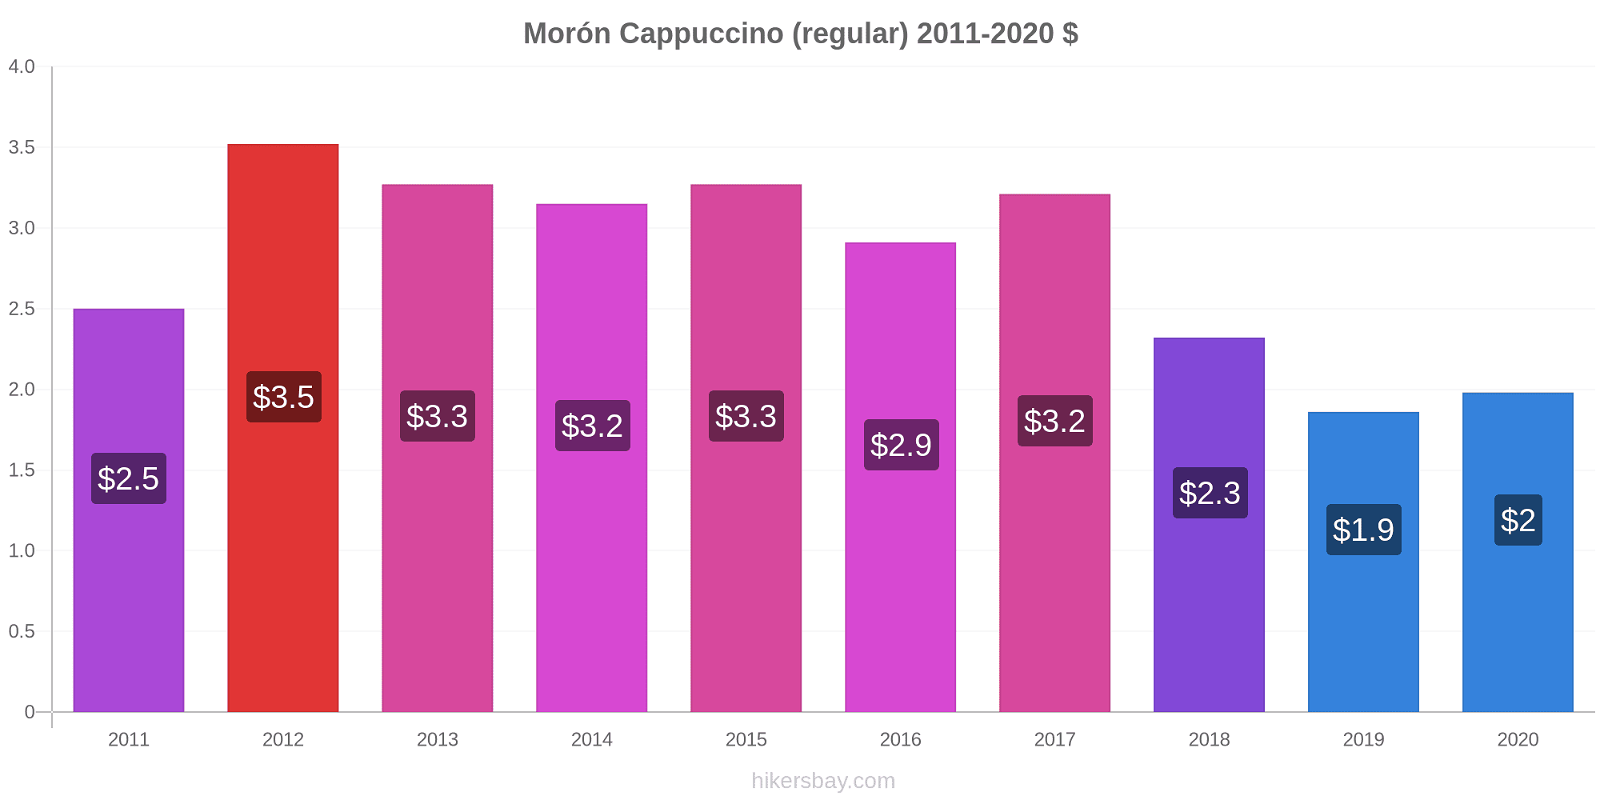 Morón price changes Cappuccino (regular) hikersbay.com